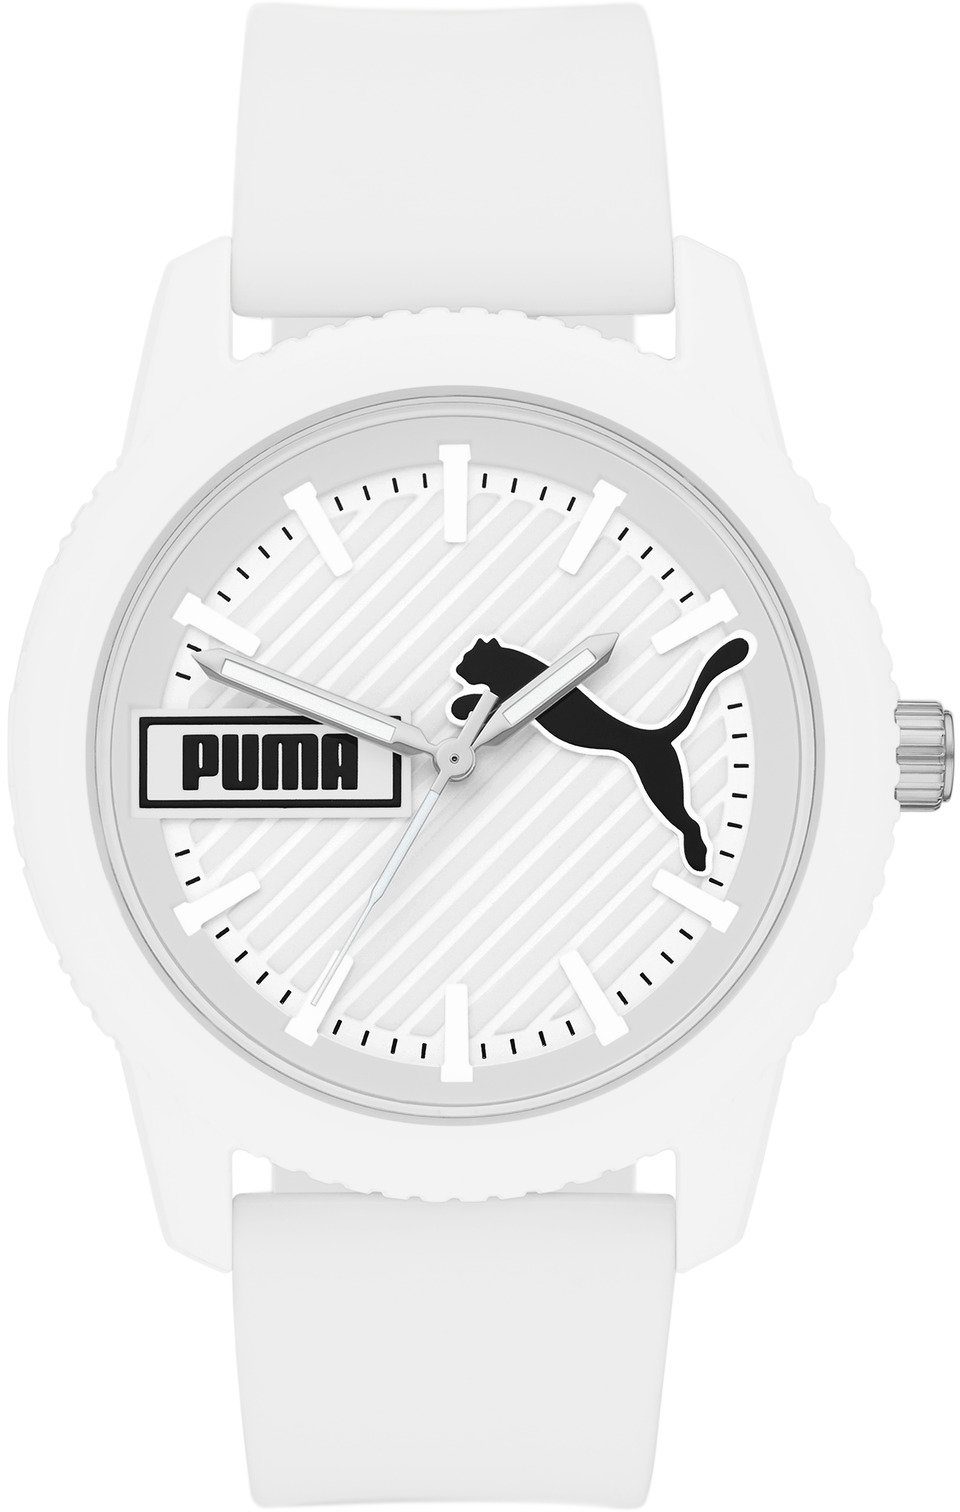 PUMA Quarzuhr ULTRAFRESH, P5094 online kaufen | OTTO